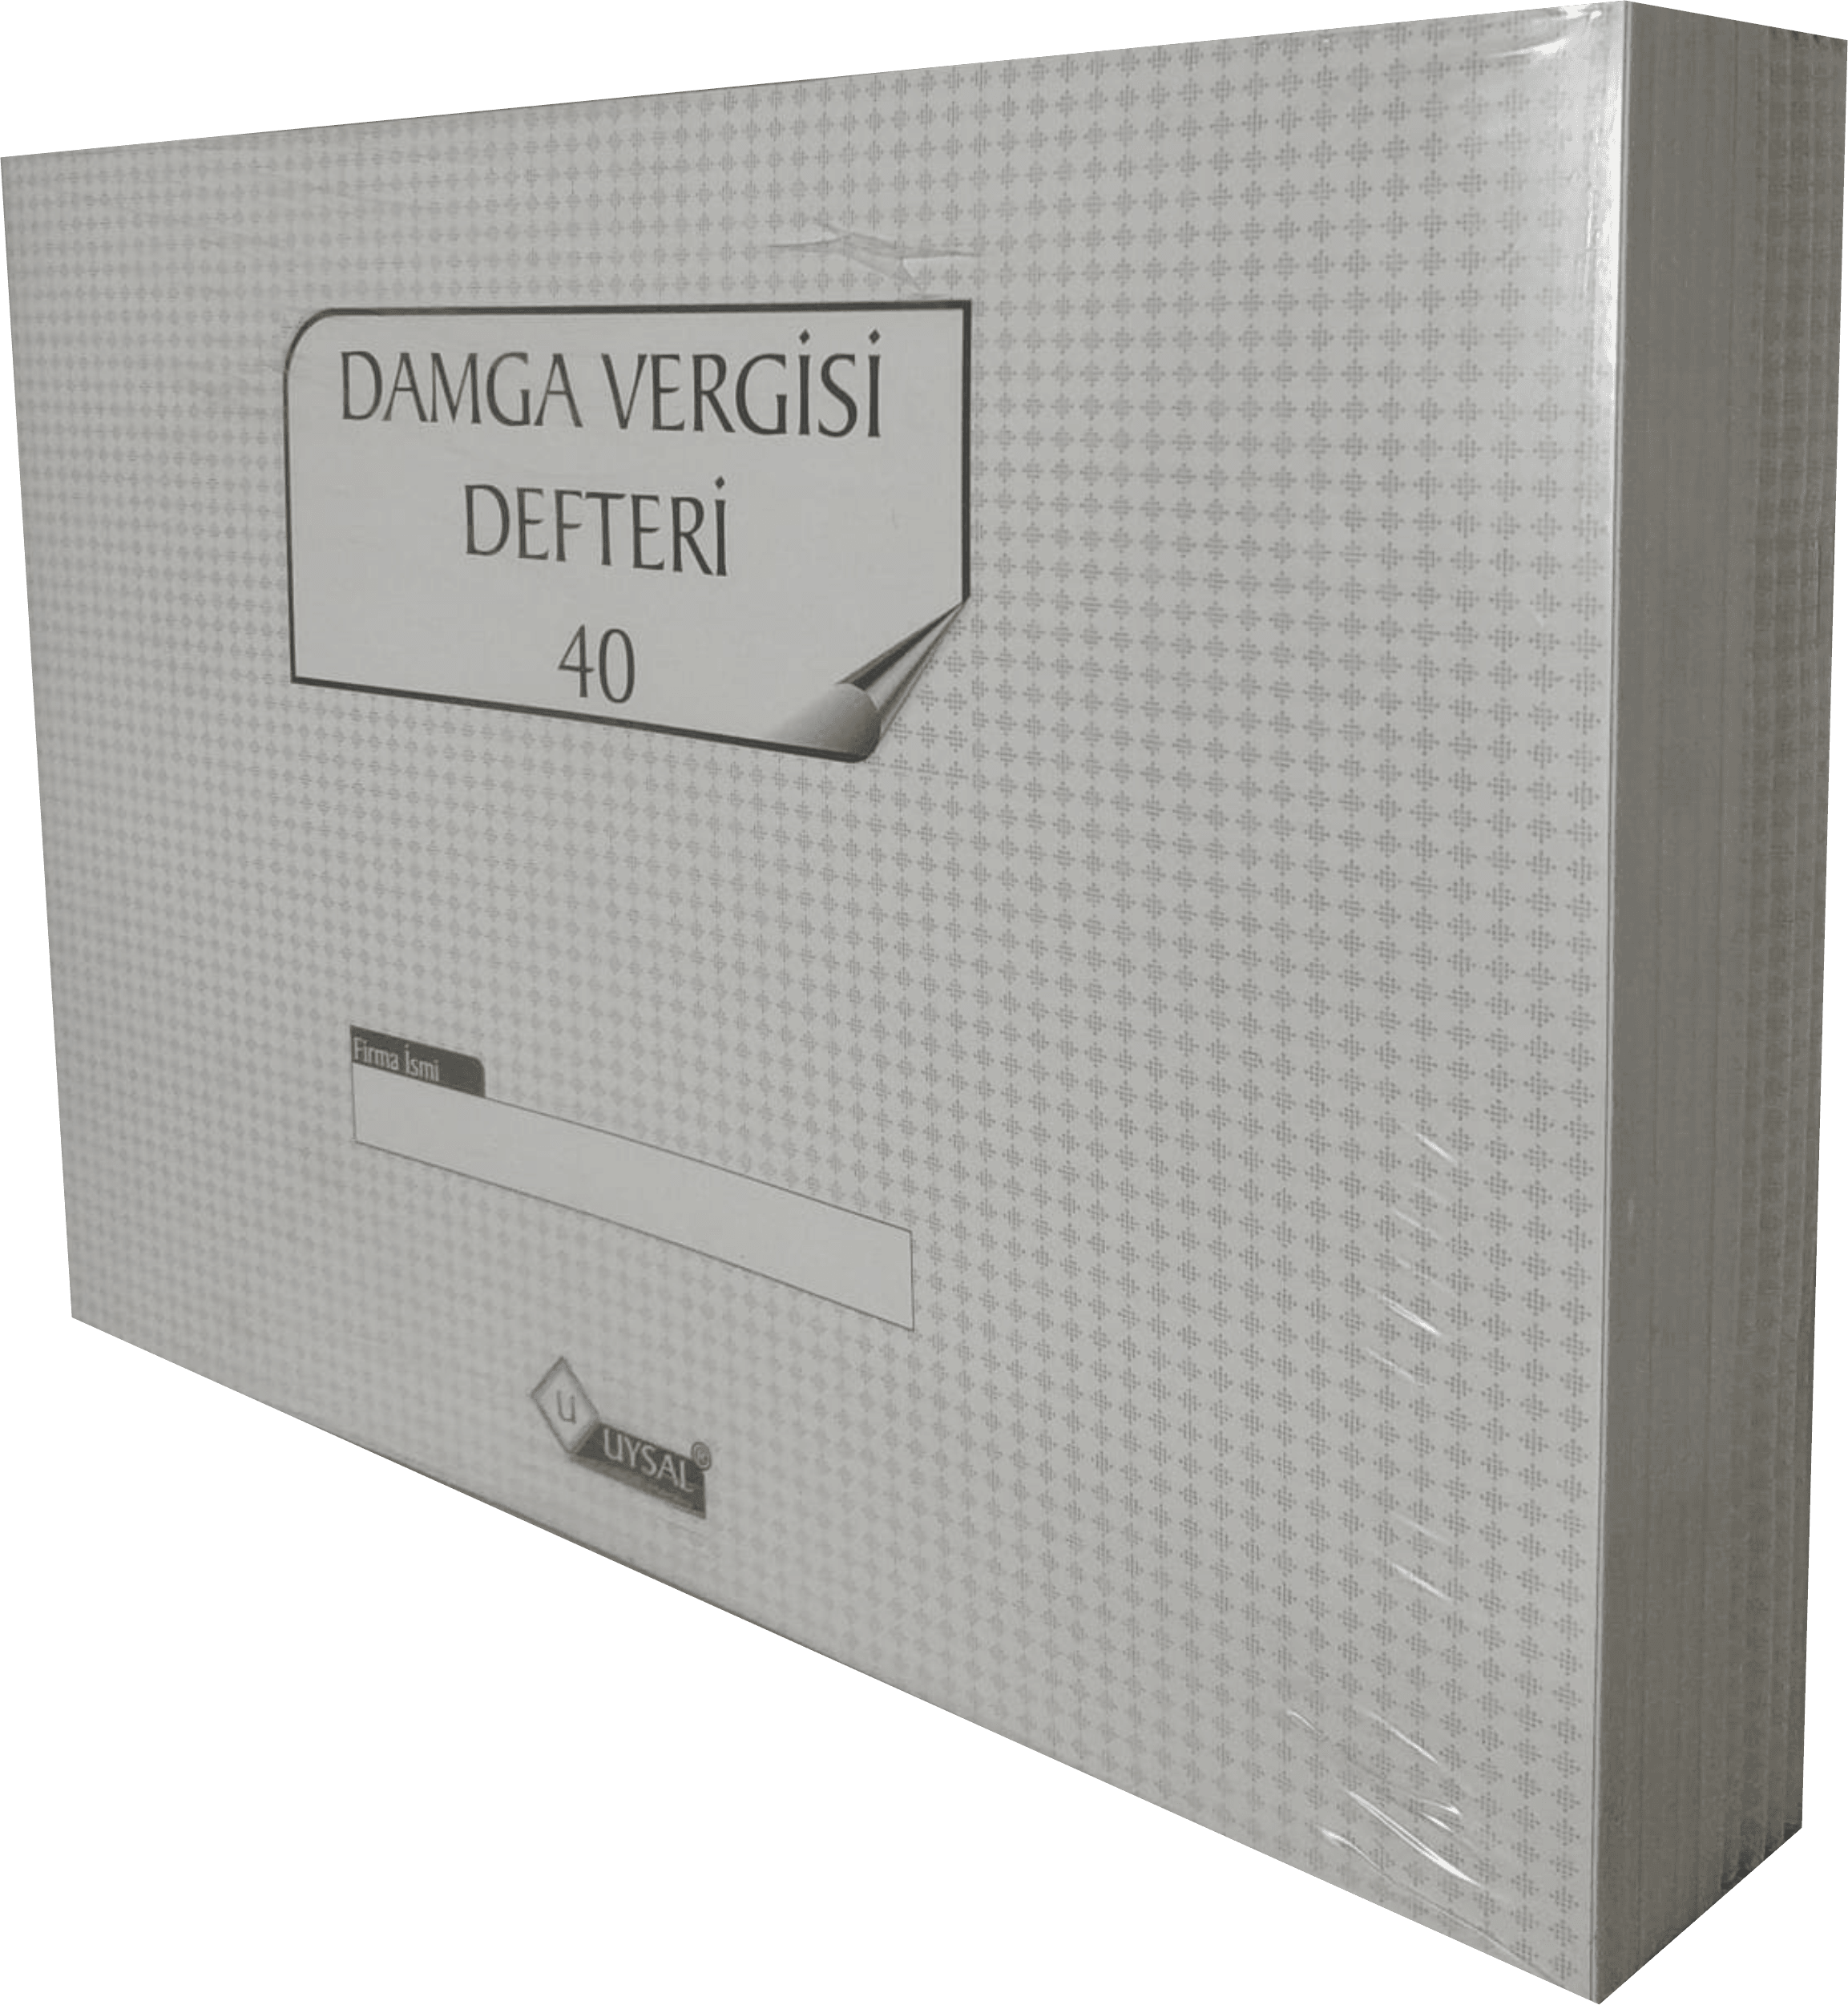 UYSAL Damga Vergisi Defteri 40 Yaprak Numaralı (80 SAYFA) 10 Lu Paket Karton Kapak